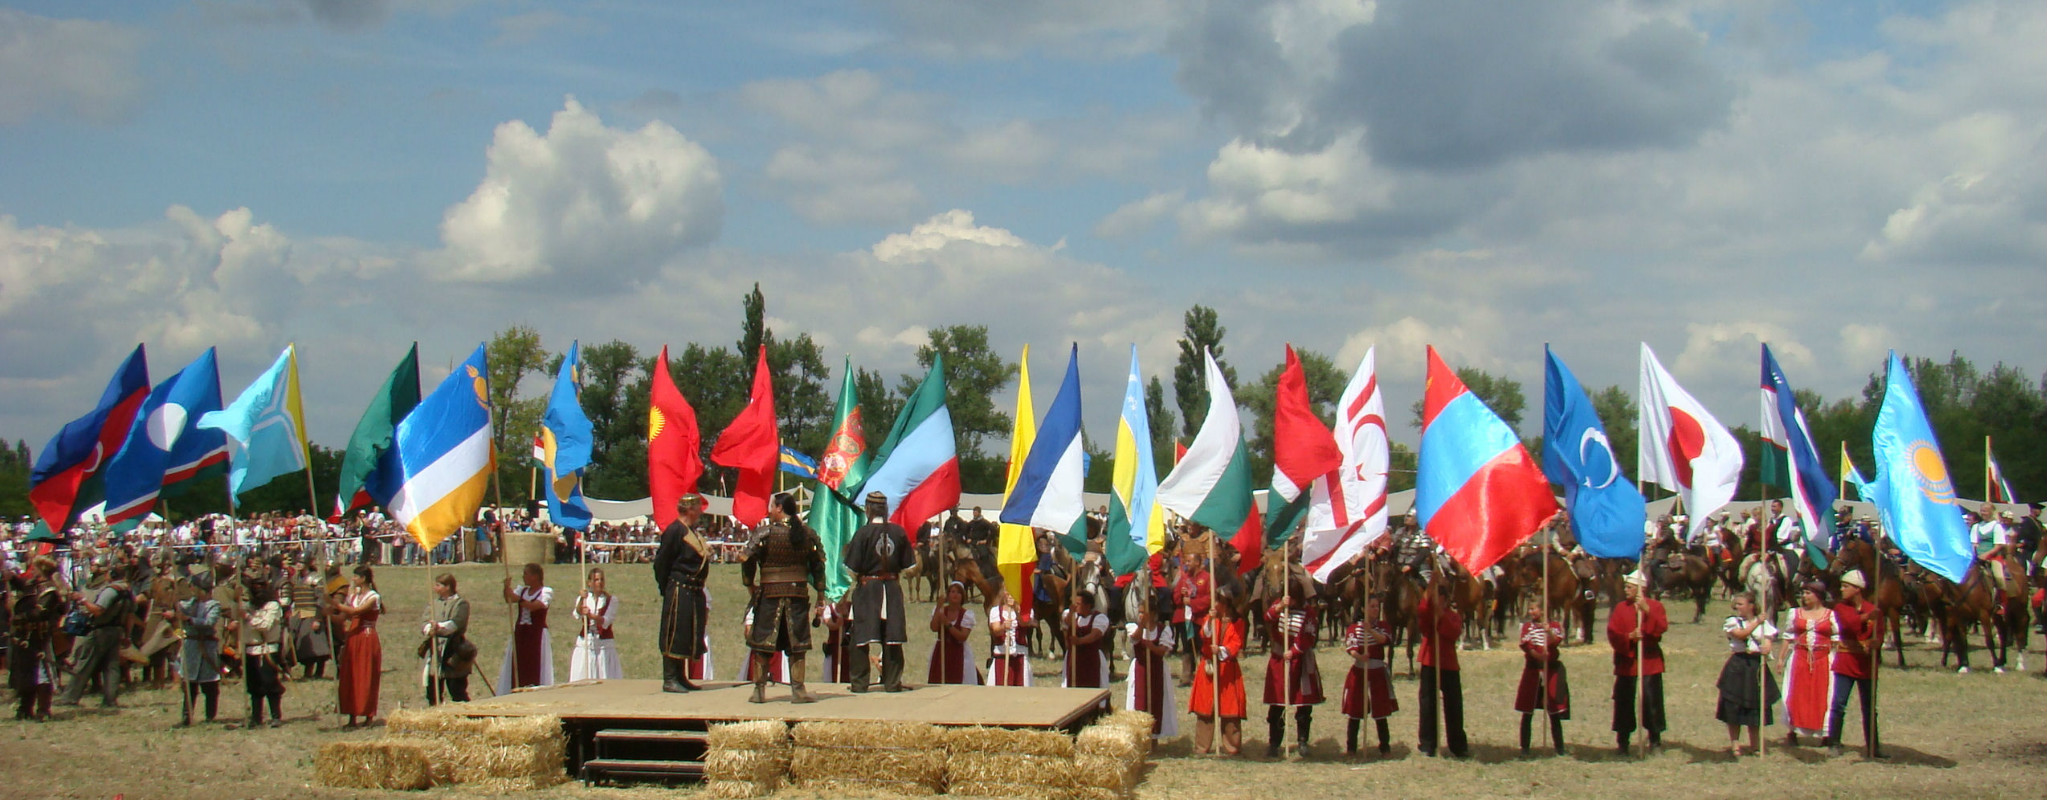 Regierung von unabhängigen Tatarstan mit Turkvölkern und Europäern